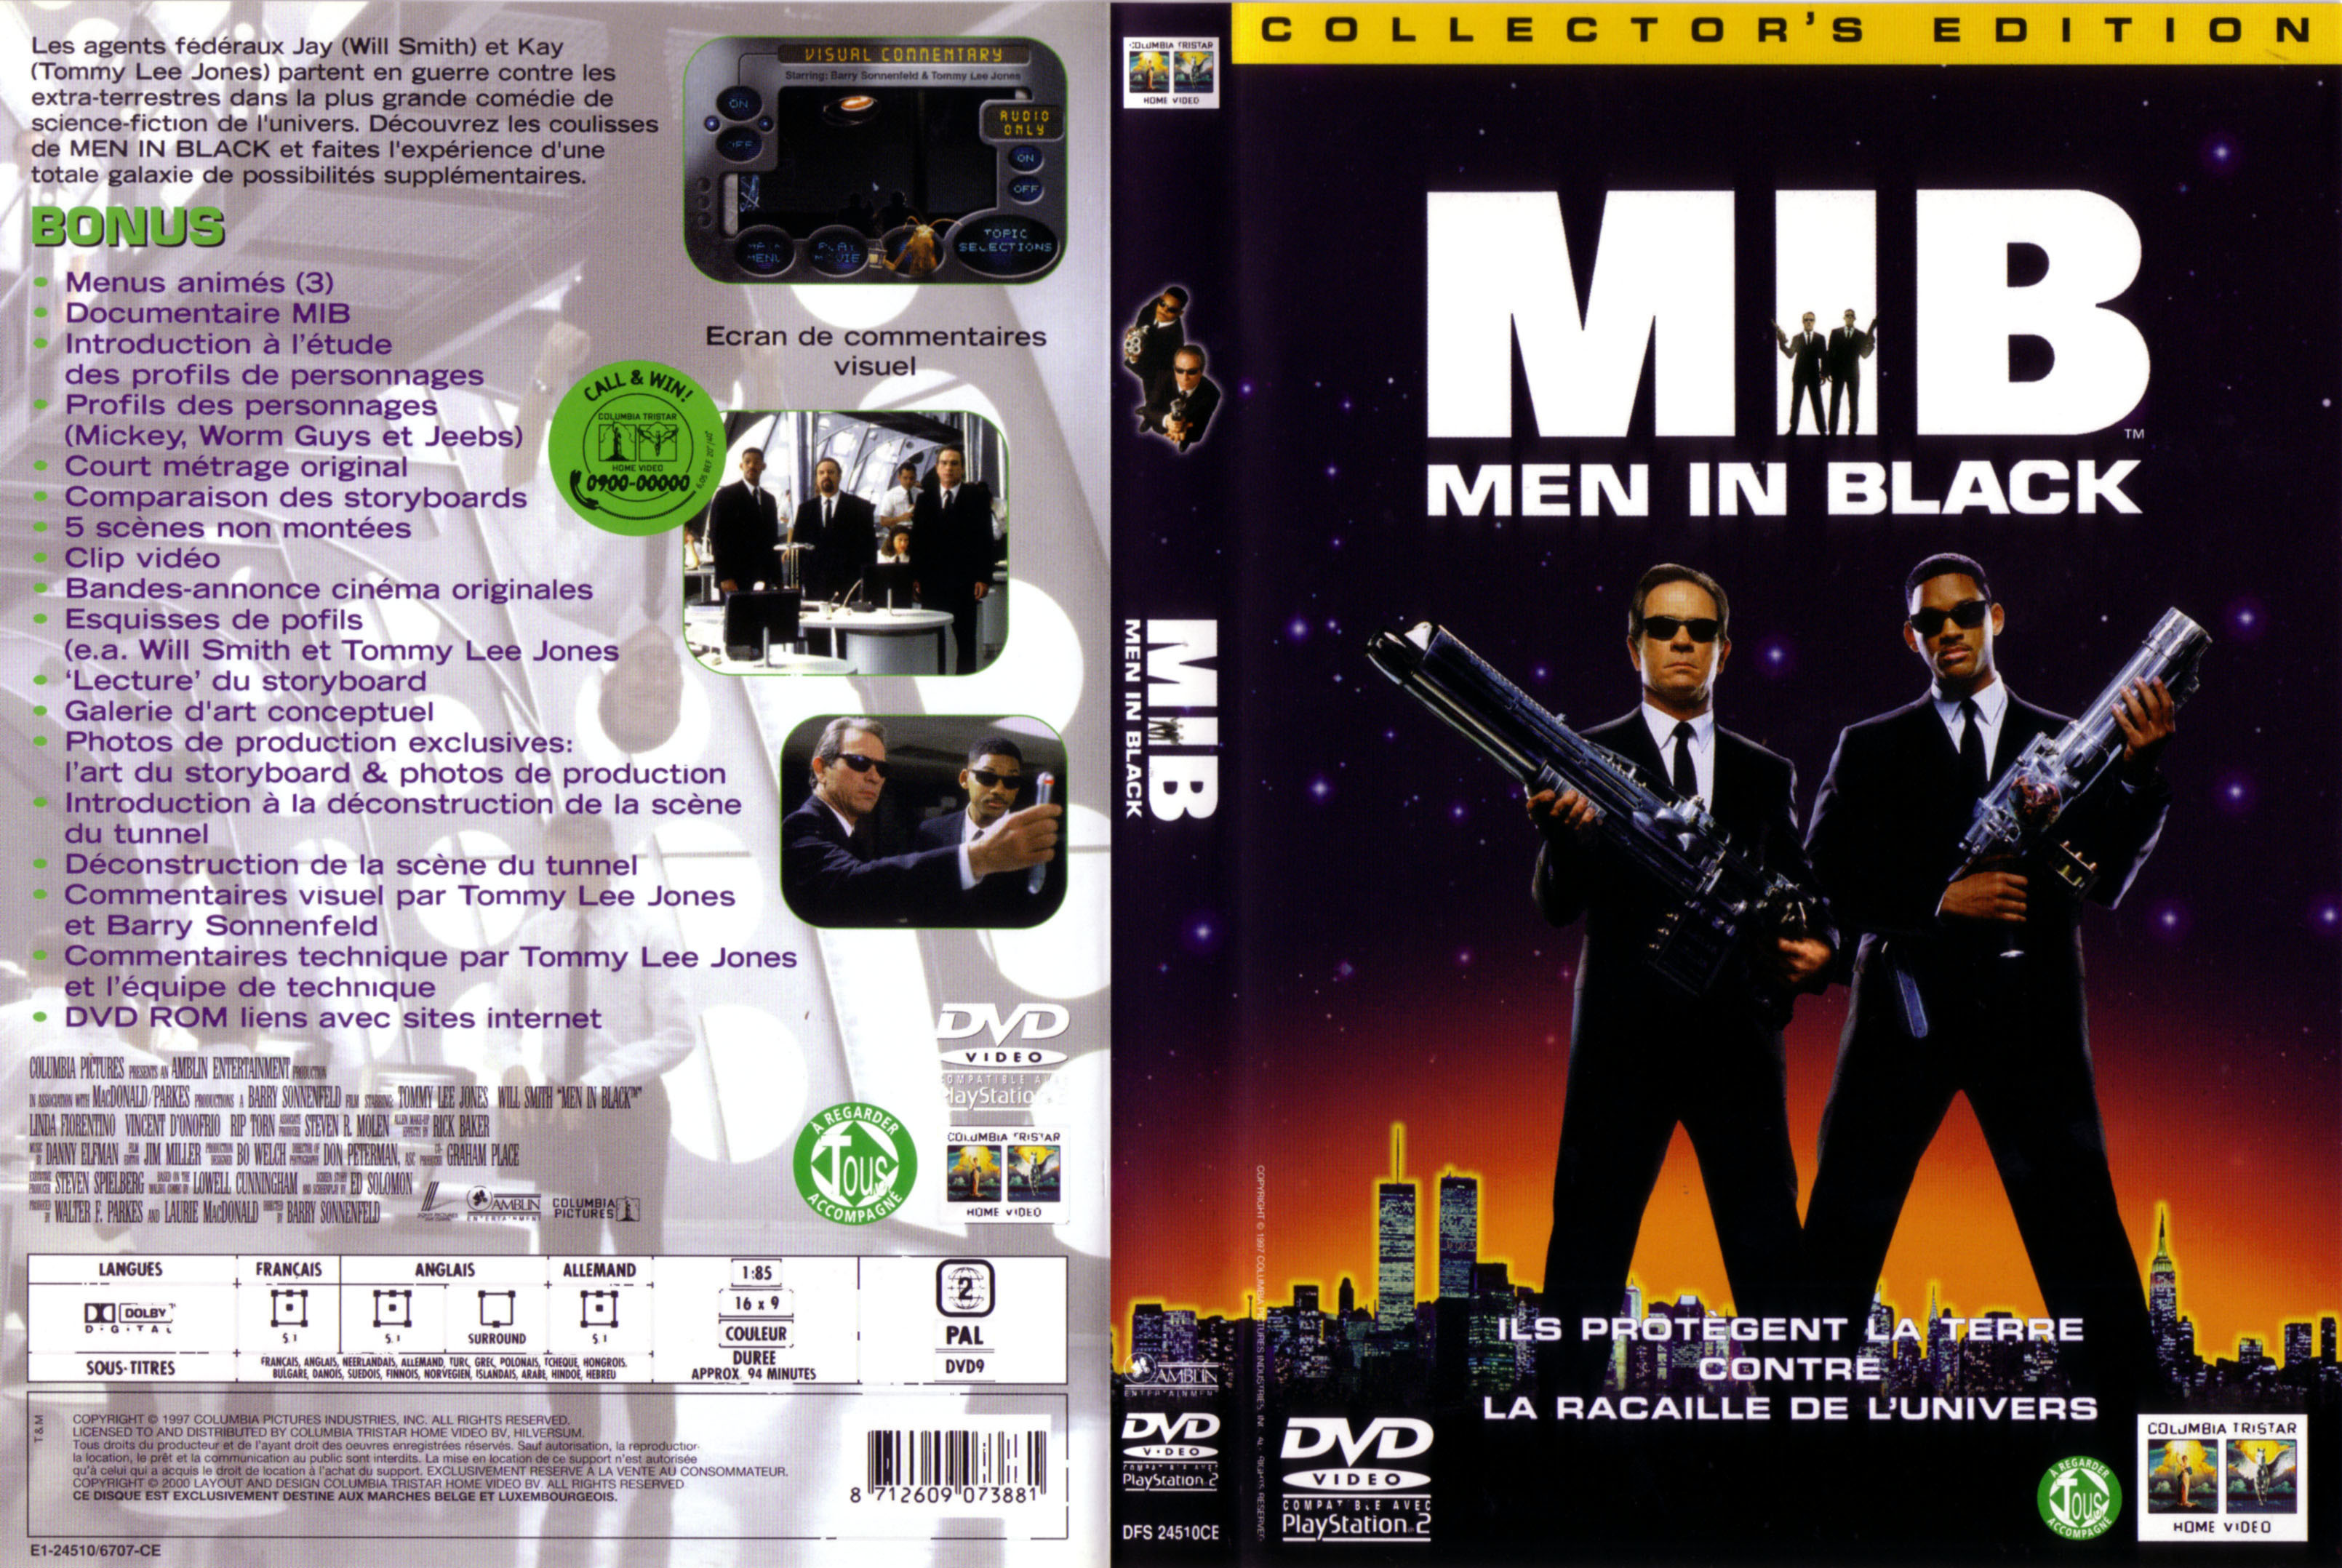 Jaquette DVD Men in black v4